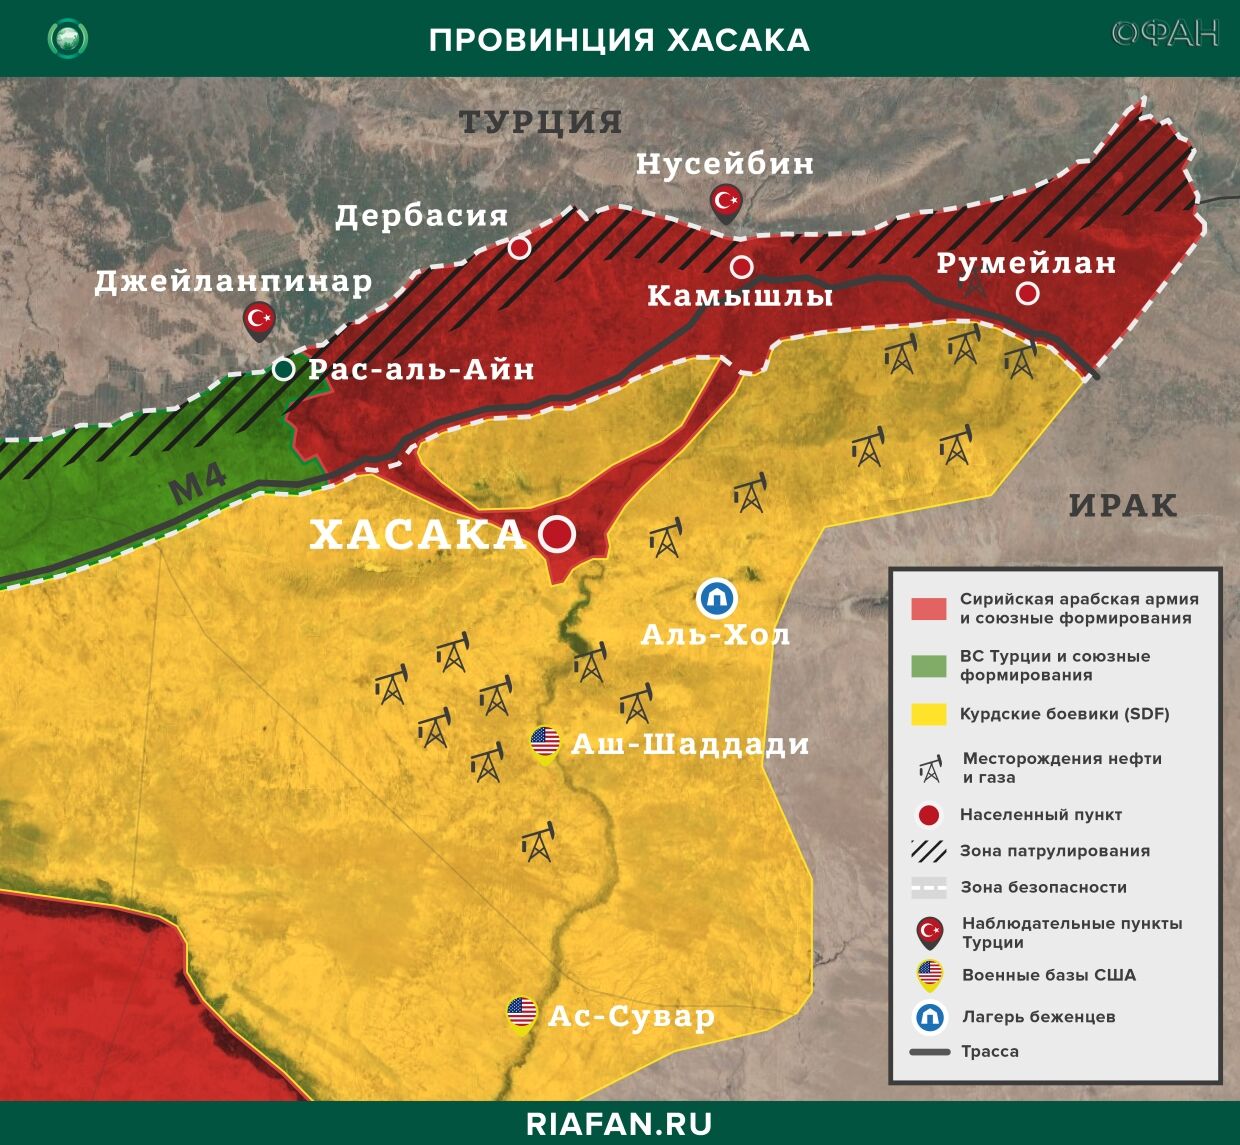 Noticias de Siria 17 Abril 22.30: 5 новых случаев заражения коронавирусом в САР, союзники Турции обстреляли жилые дома в Хасаке